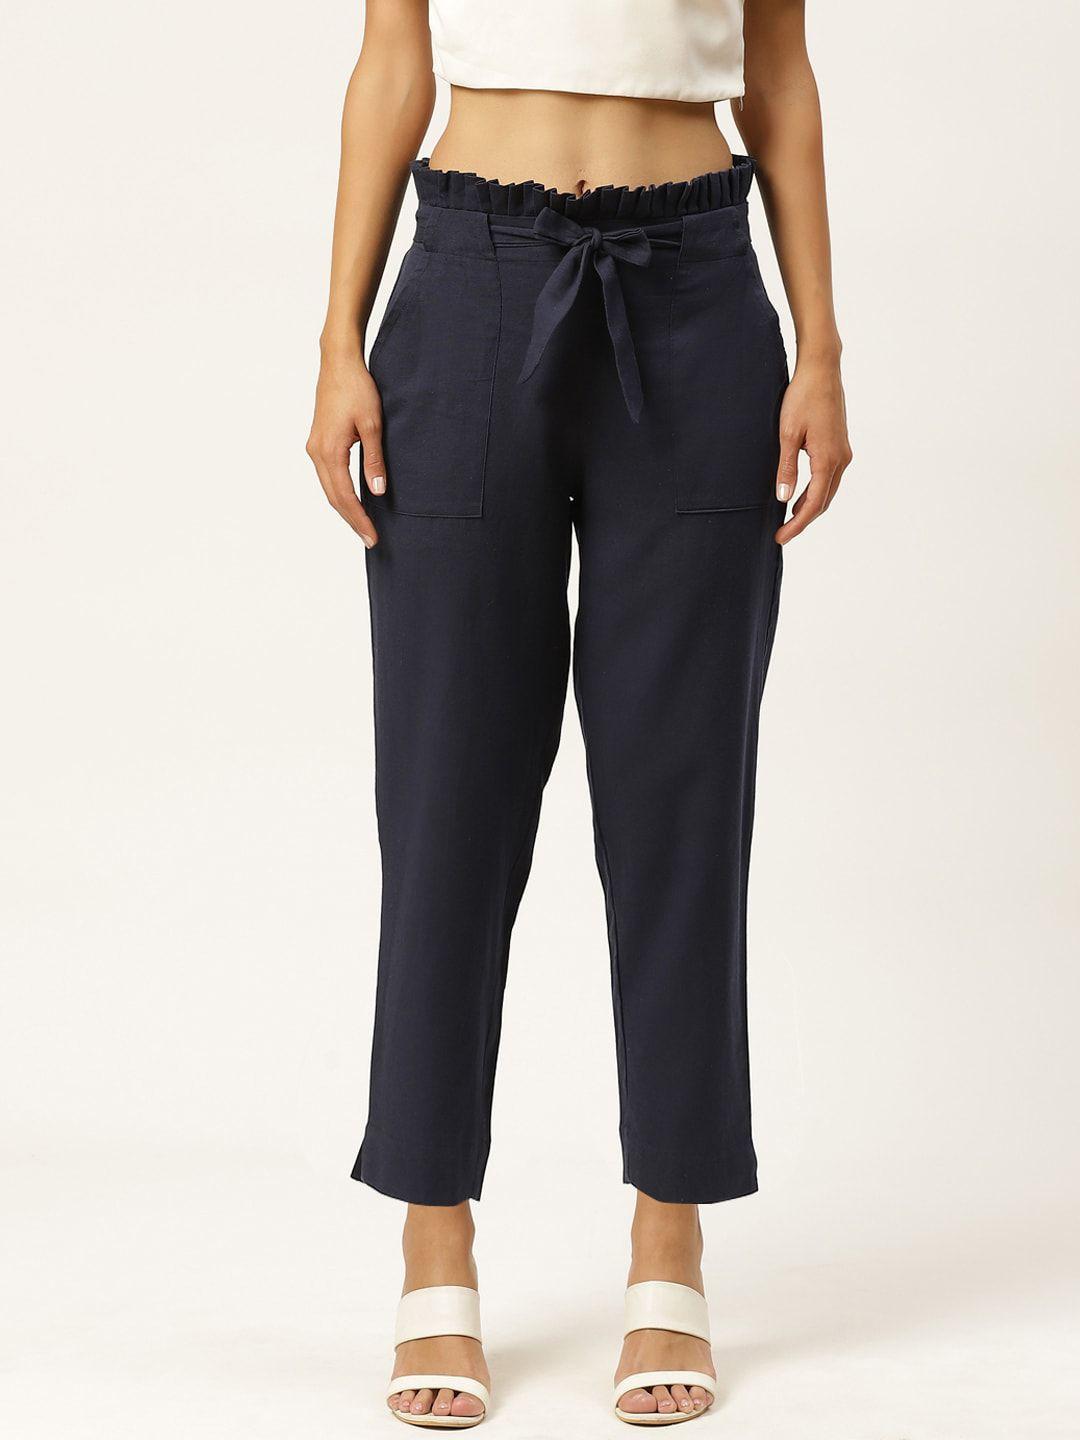 iqraar women navy blue slim fit trousers